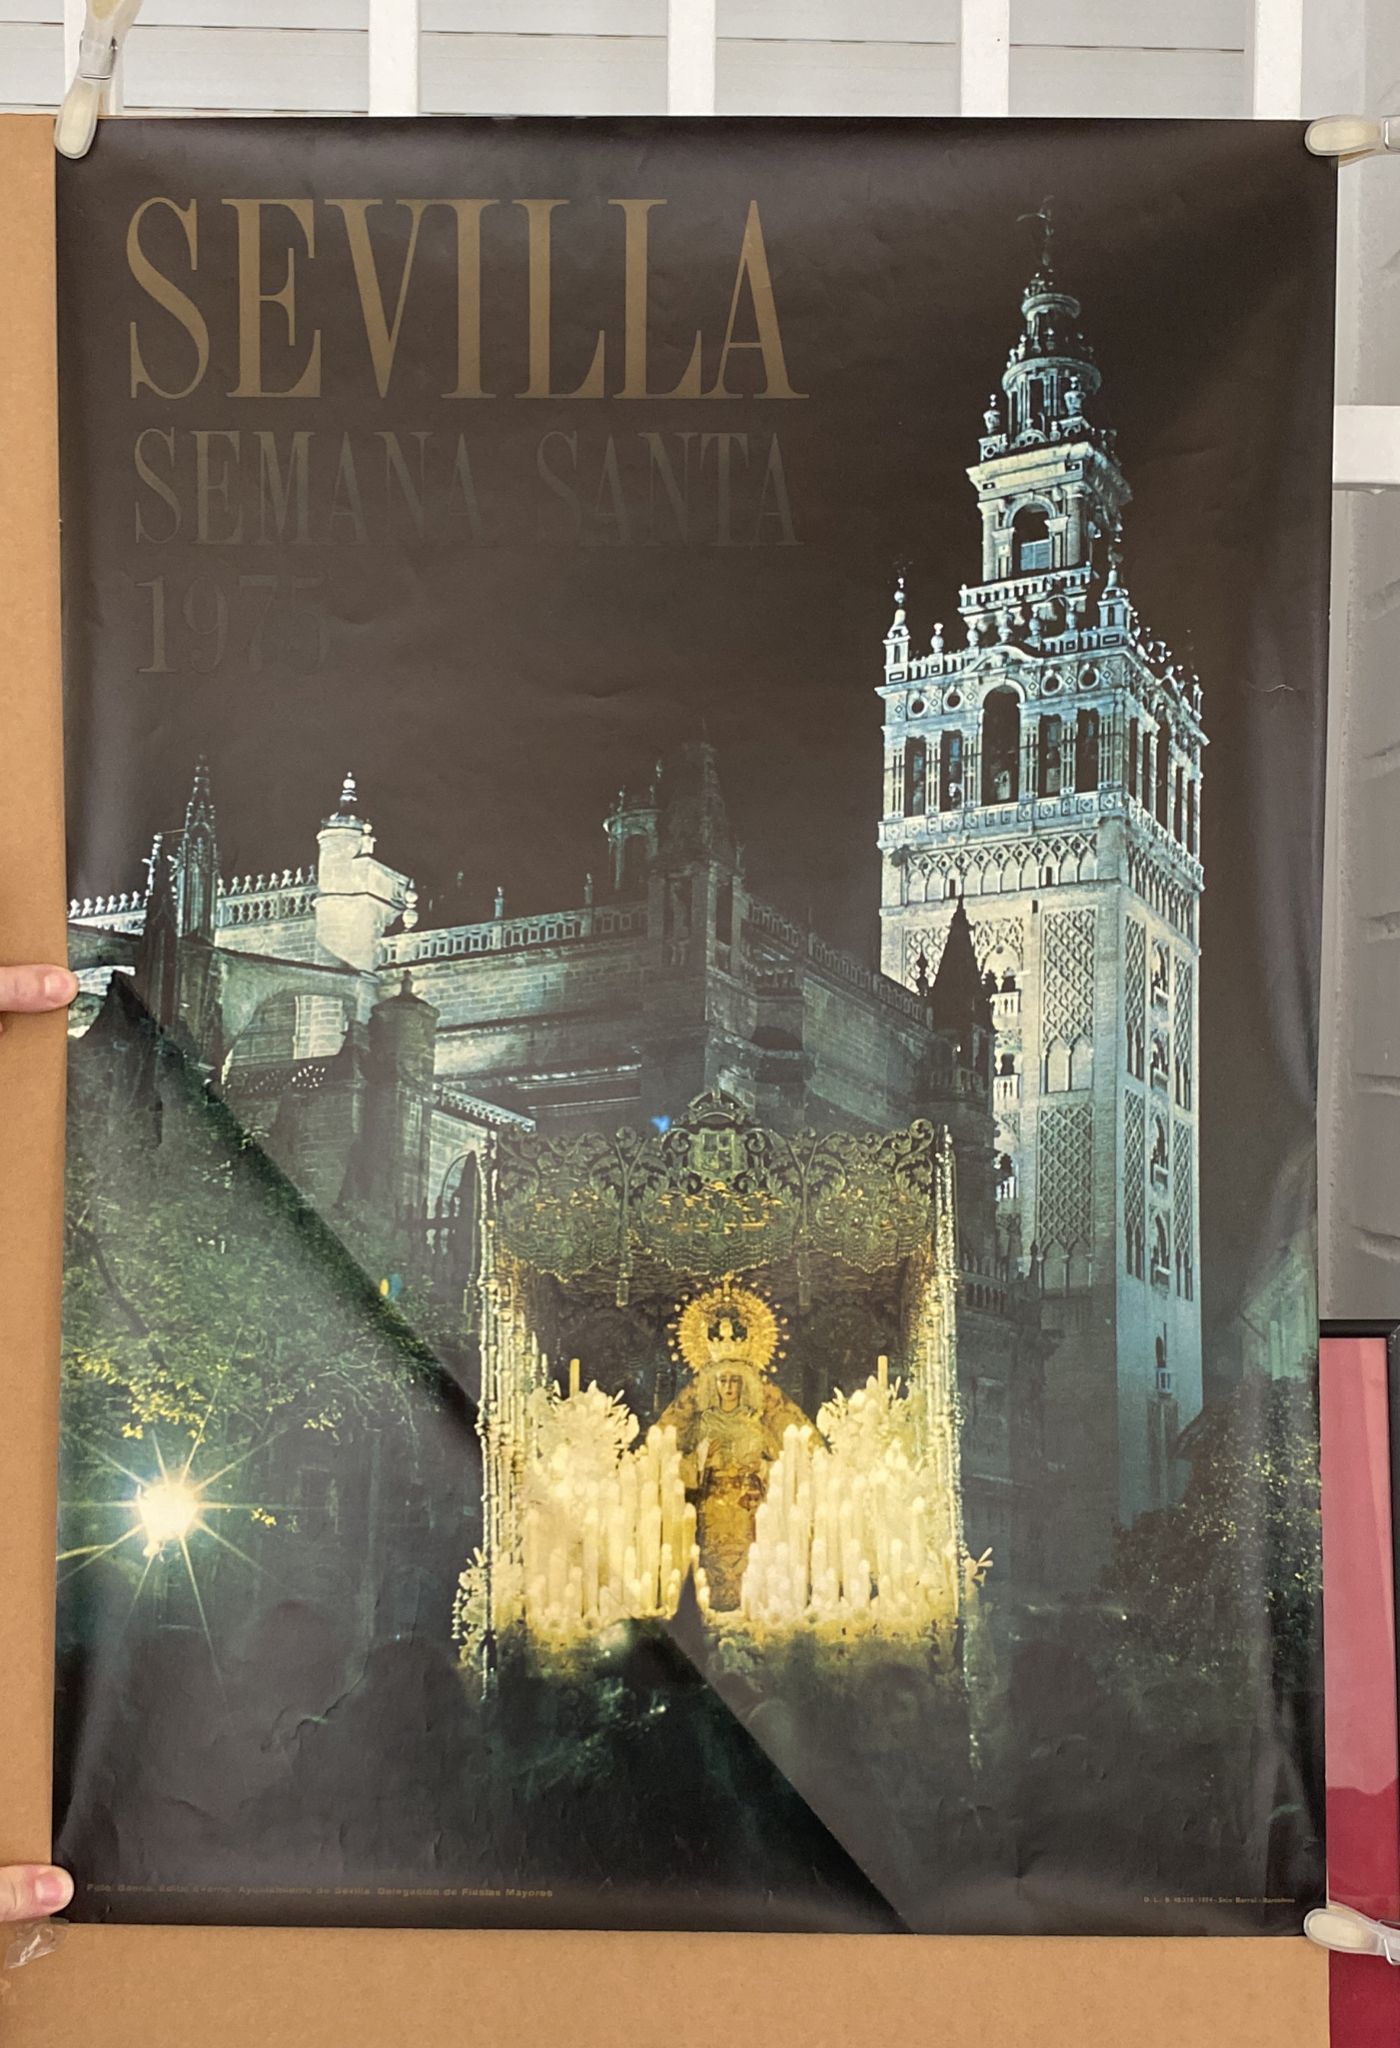 Cartel (68x48) Sevilla Semana Santa 1975. Fot. Baena